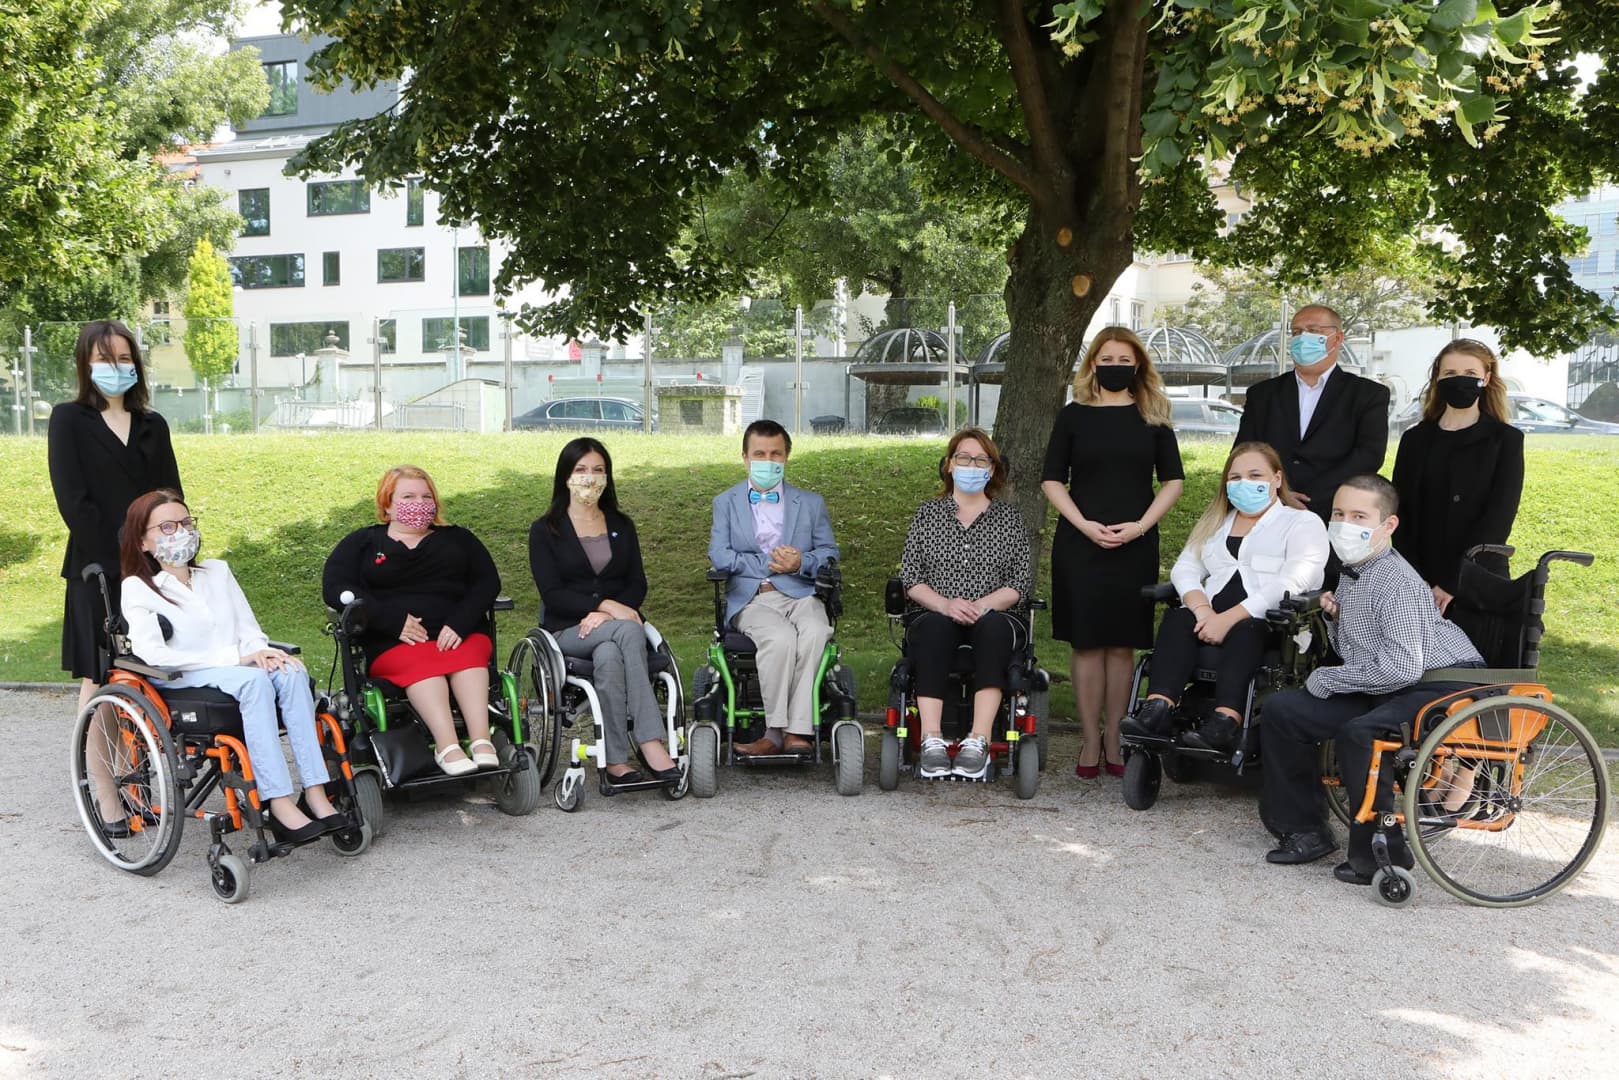 Čaputová szerint az utóbbi években javult a fogyatékkal élők helyzete Szlovákiában